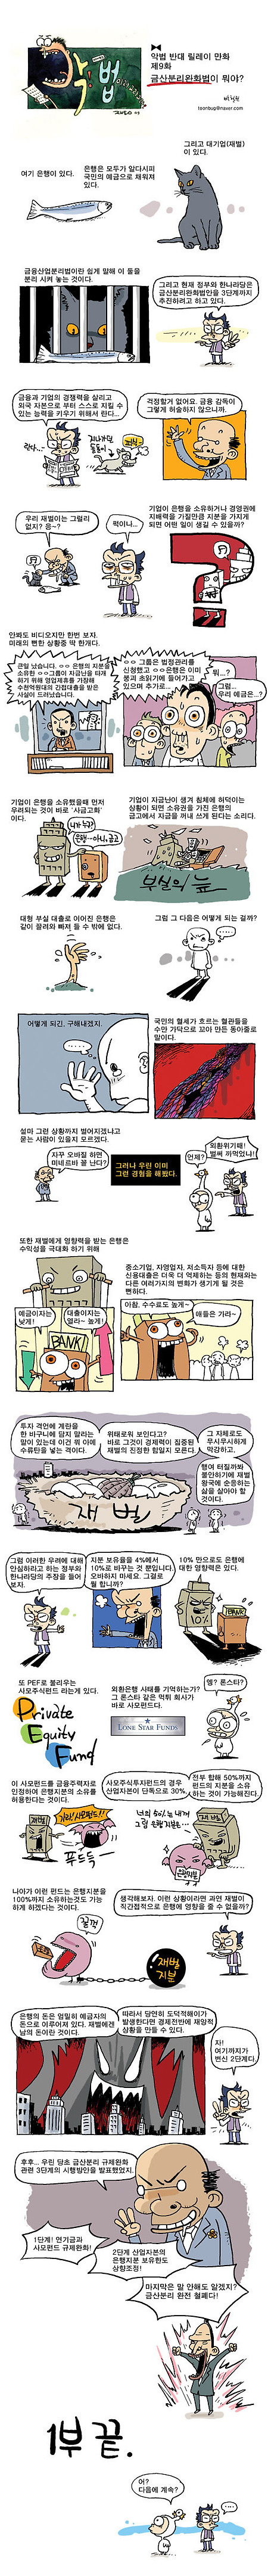 [펌]악법 카툰 릴레이 9화(금산분리완화법, 박철권)